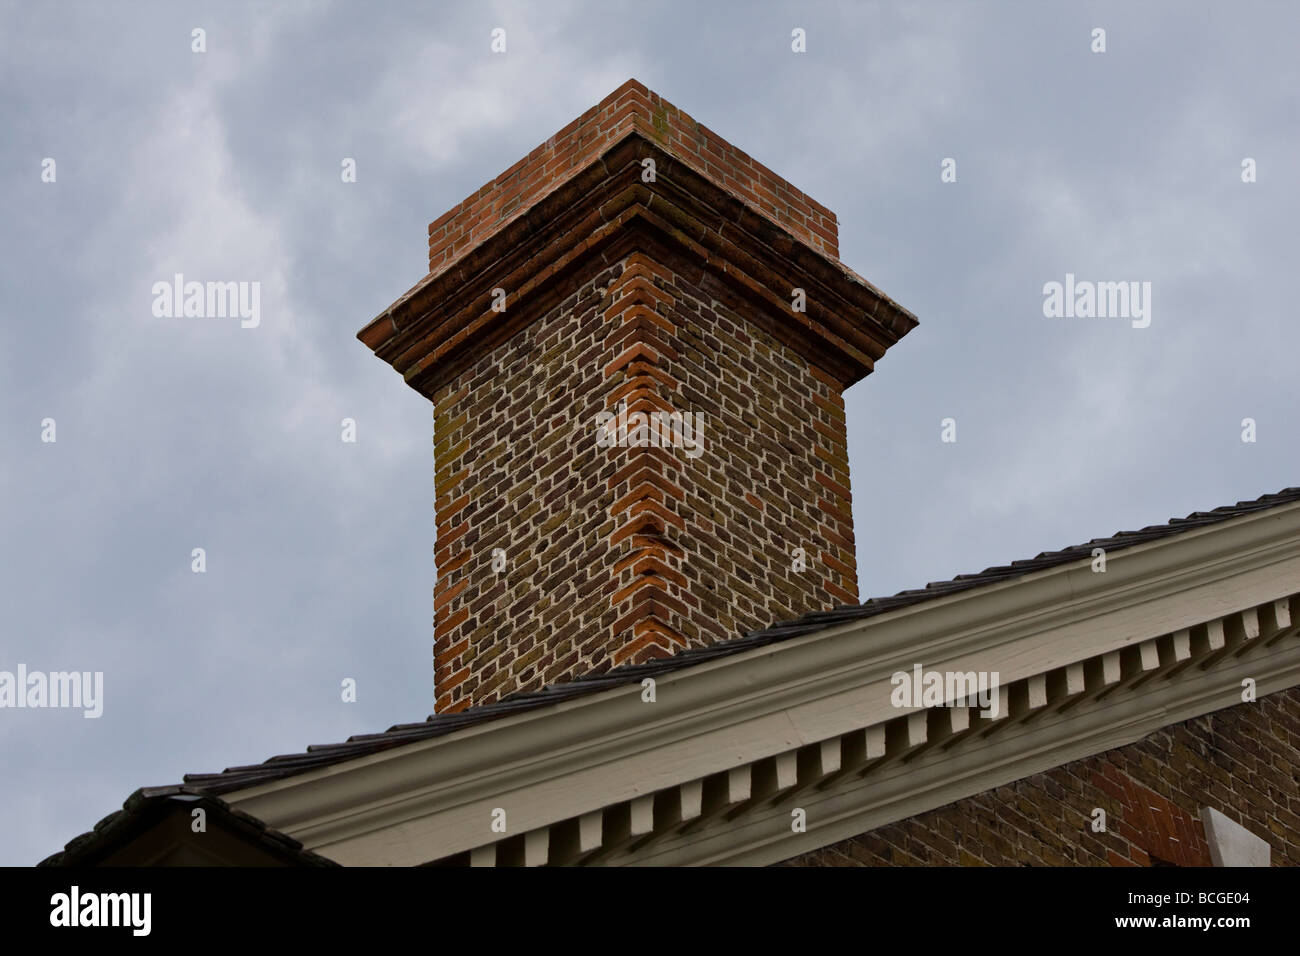 Vue de l'angle d'une cheminée en brique sur un bâtiment historique. Banque D'Images